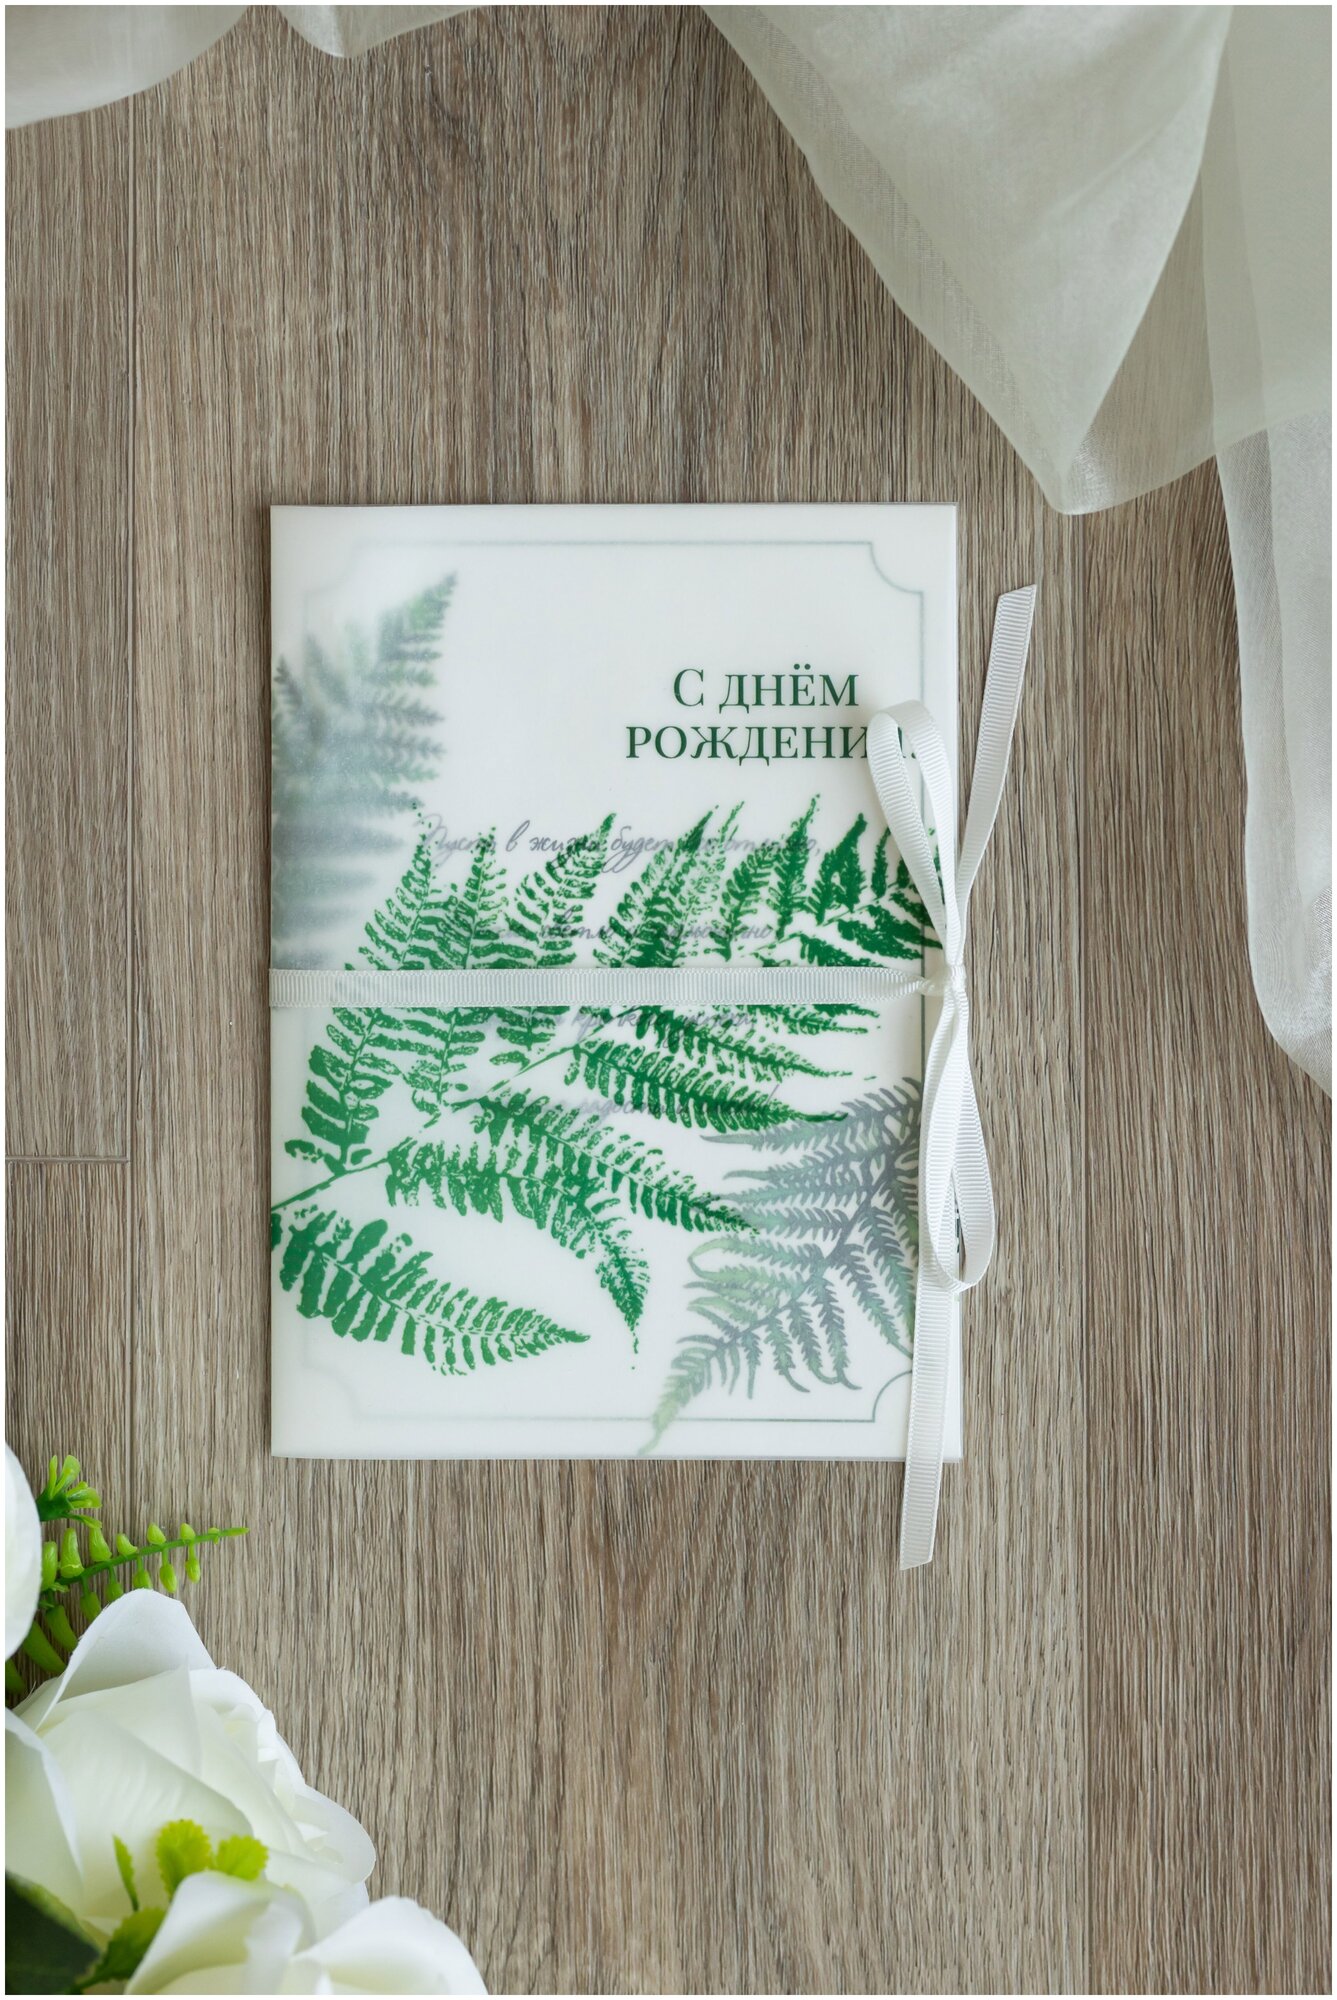 Открытка в природном стиле "С днем рождения" с зеленым принтом папоротника и обложкой из кальки, с белой атласной лентой